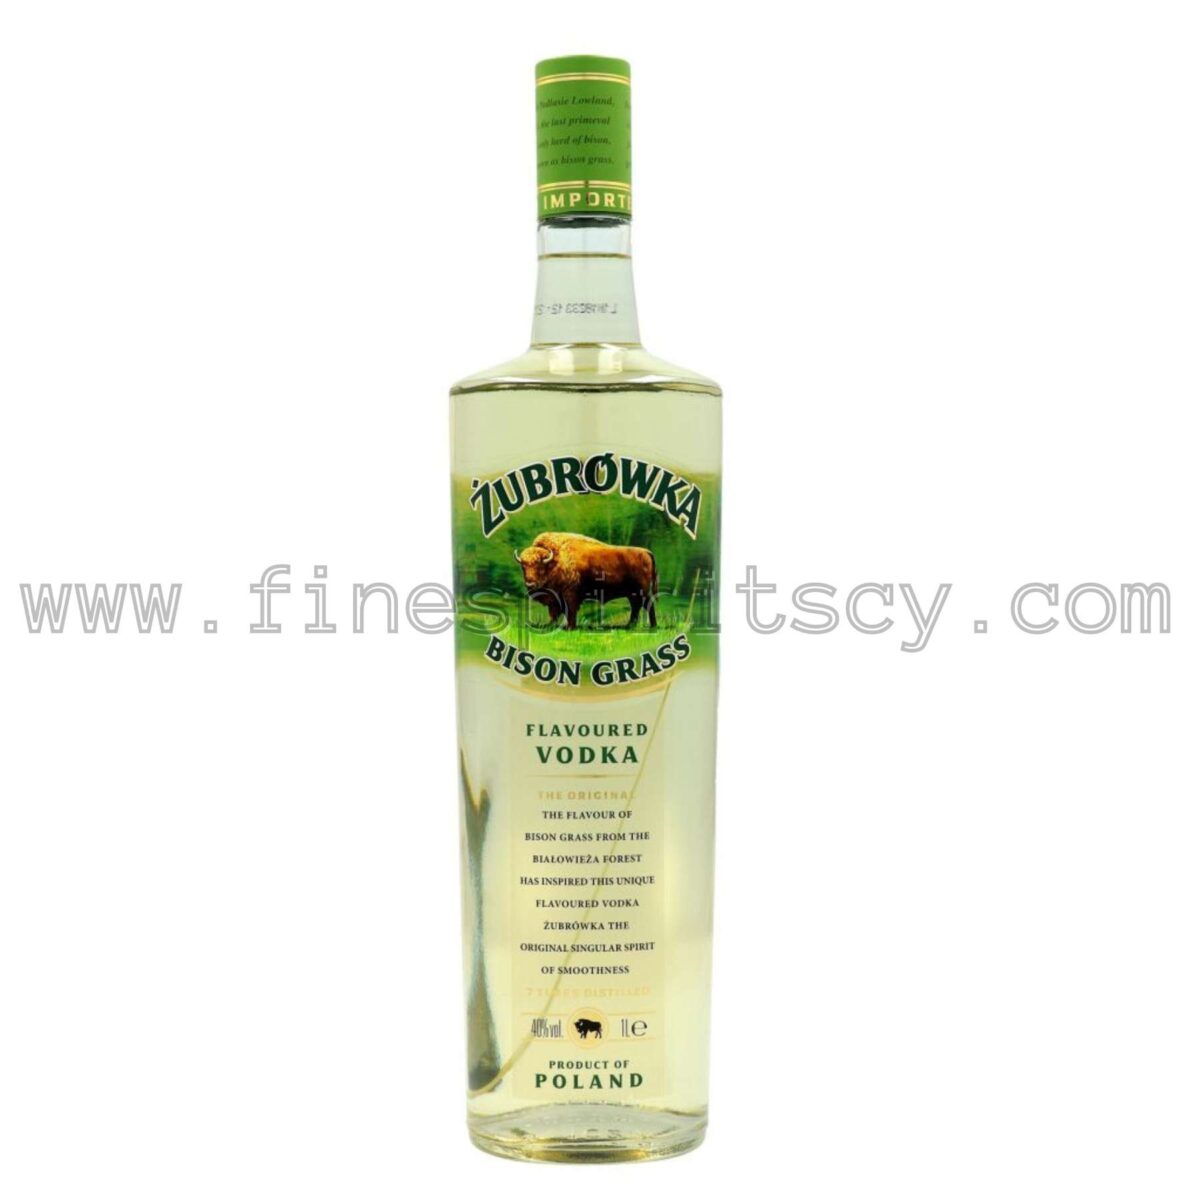 Zubrowka Bison Grass 1000ml 100cl 1L Liter Litre Cyprus Price Polish Vodka Order Online